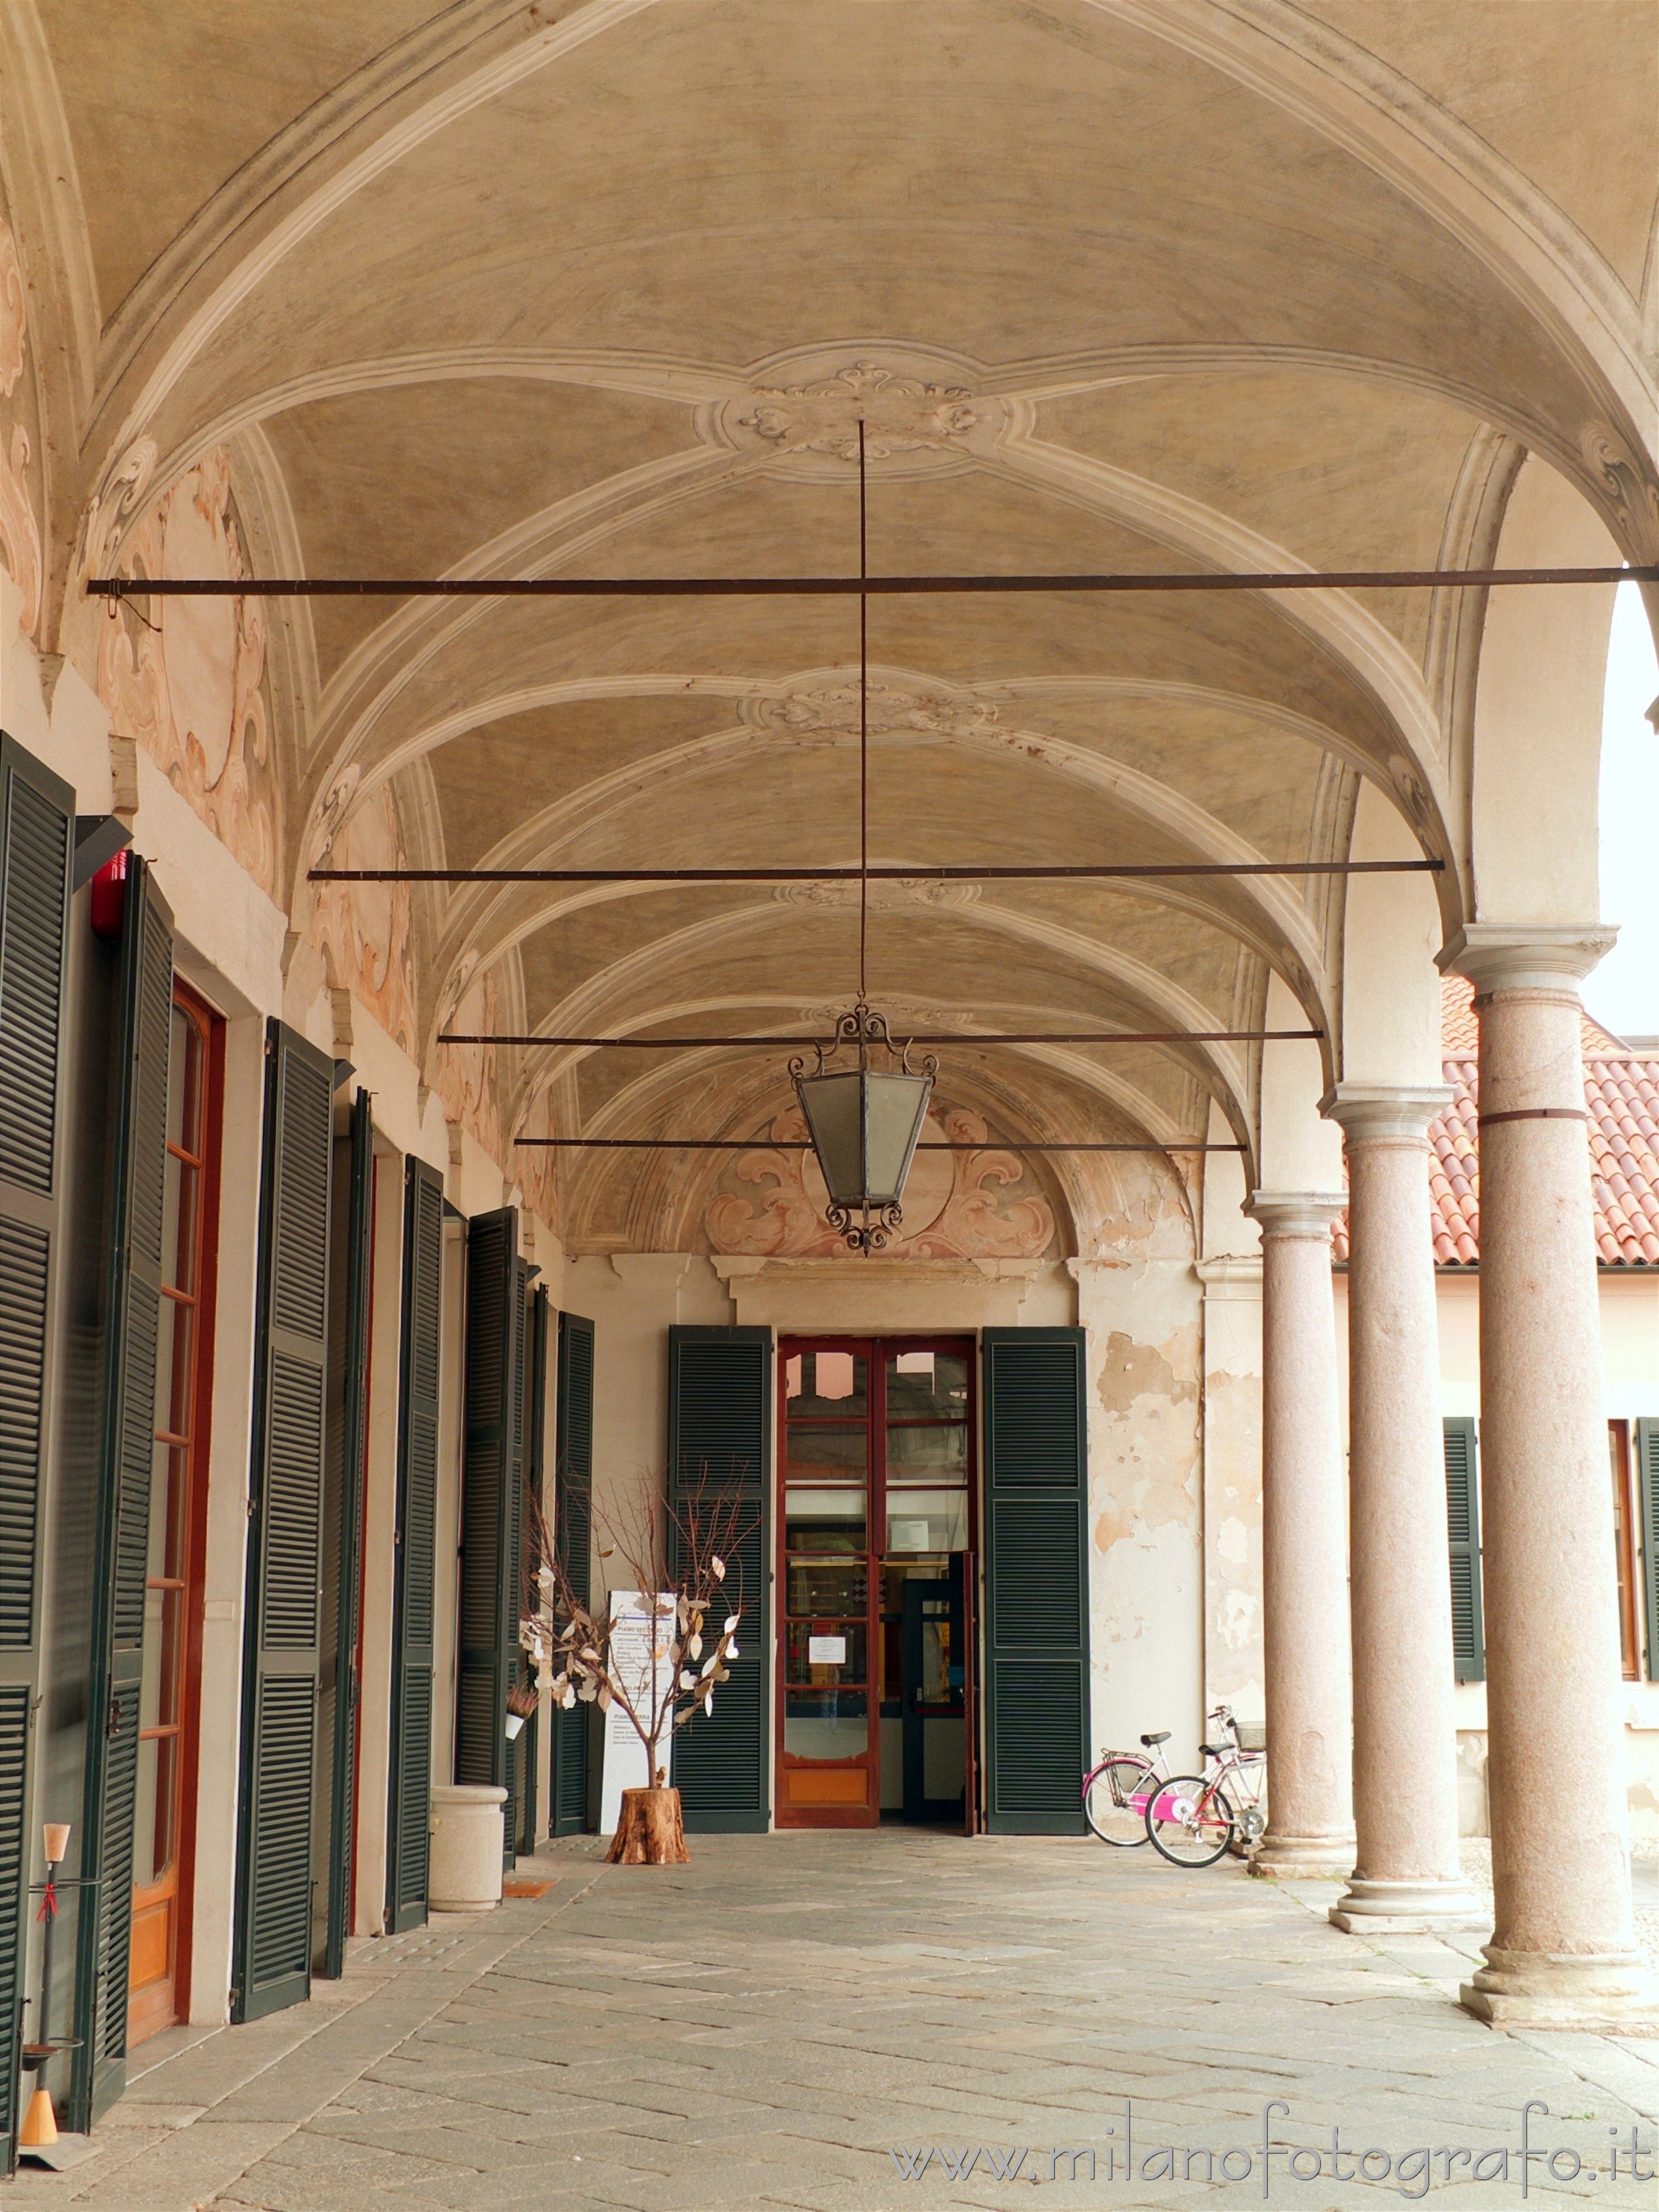 Cavenago di Brianza (Monza e Brianza, Italy): Portico in the court of Palace Rasini - Cavenago di Brianza (Monza e Brianza, Italy)